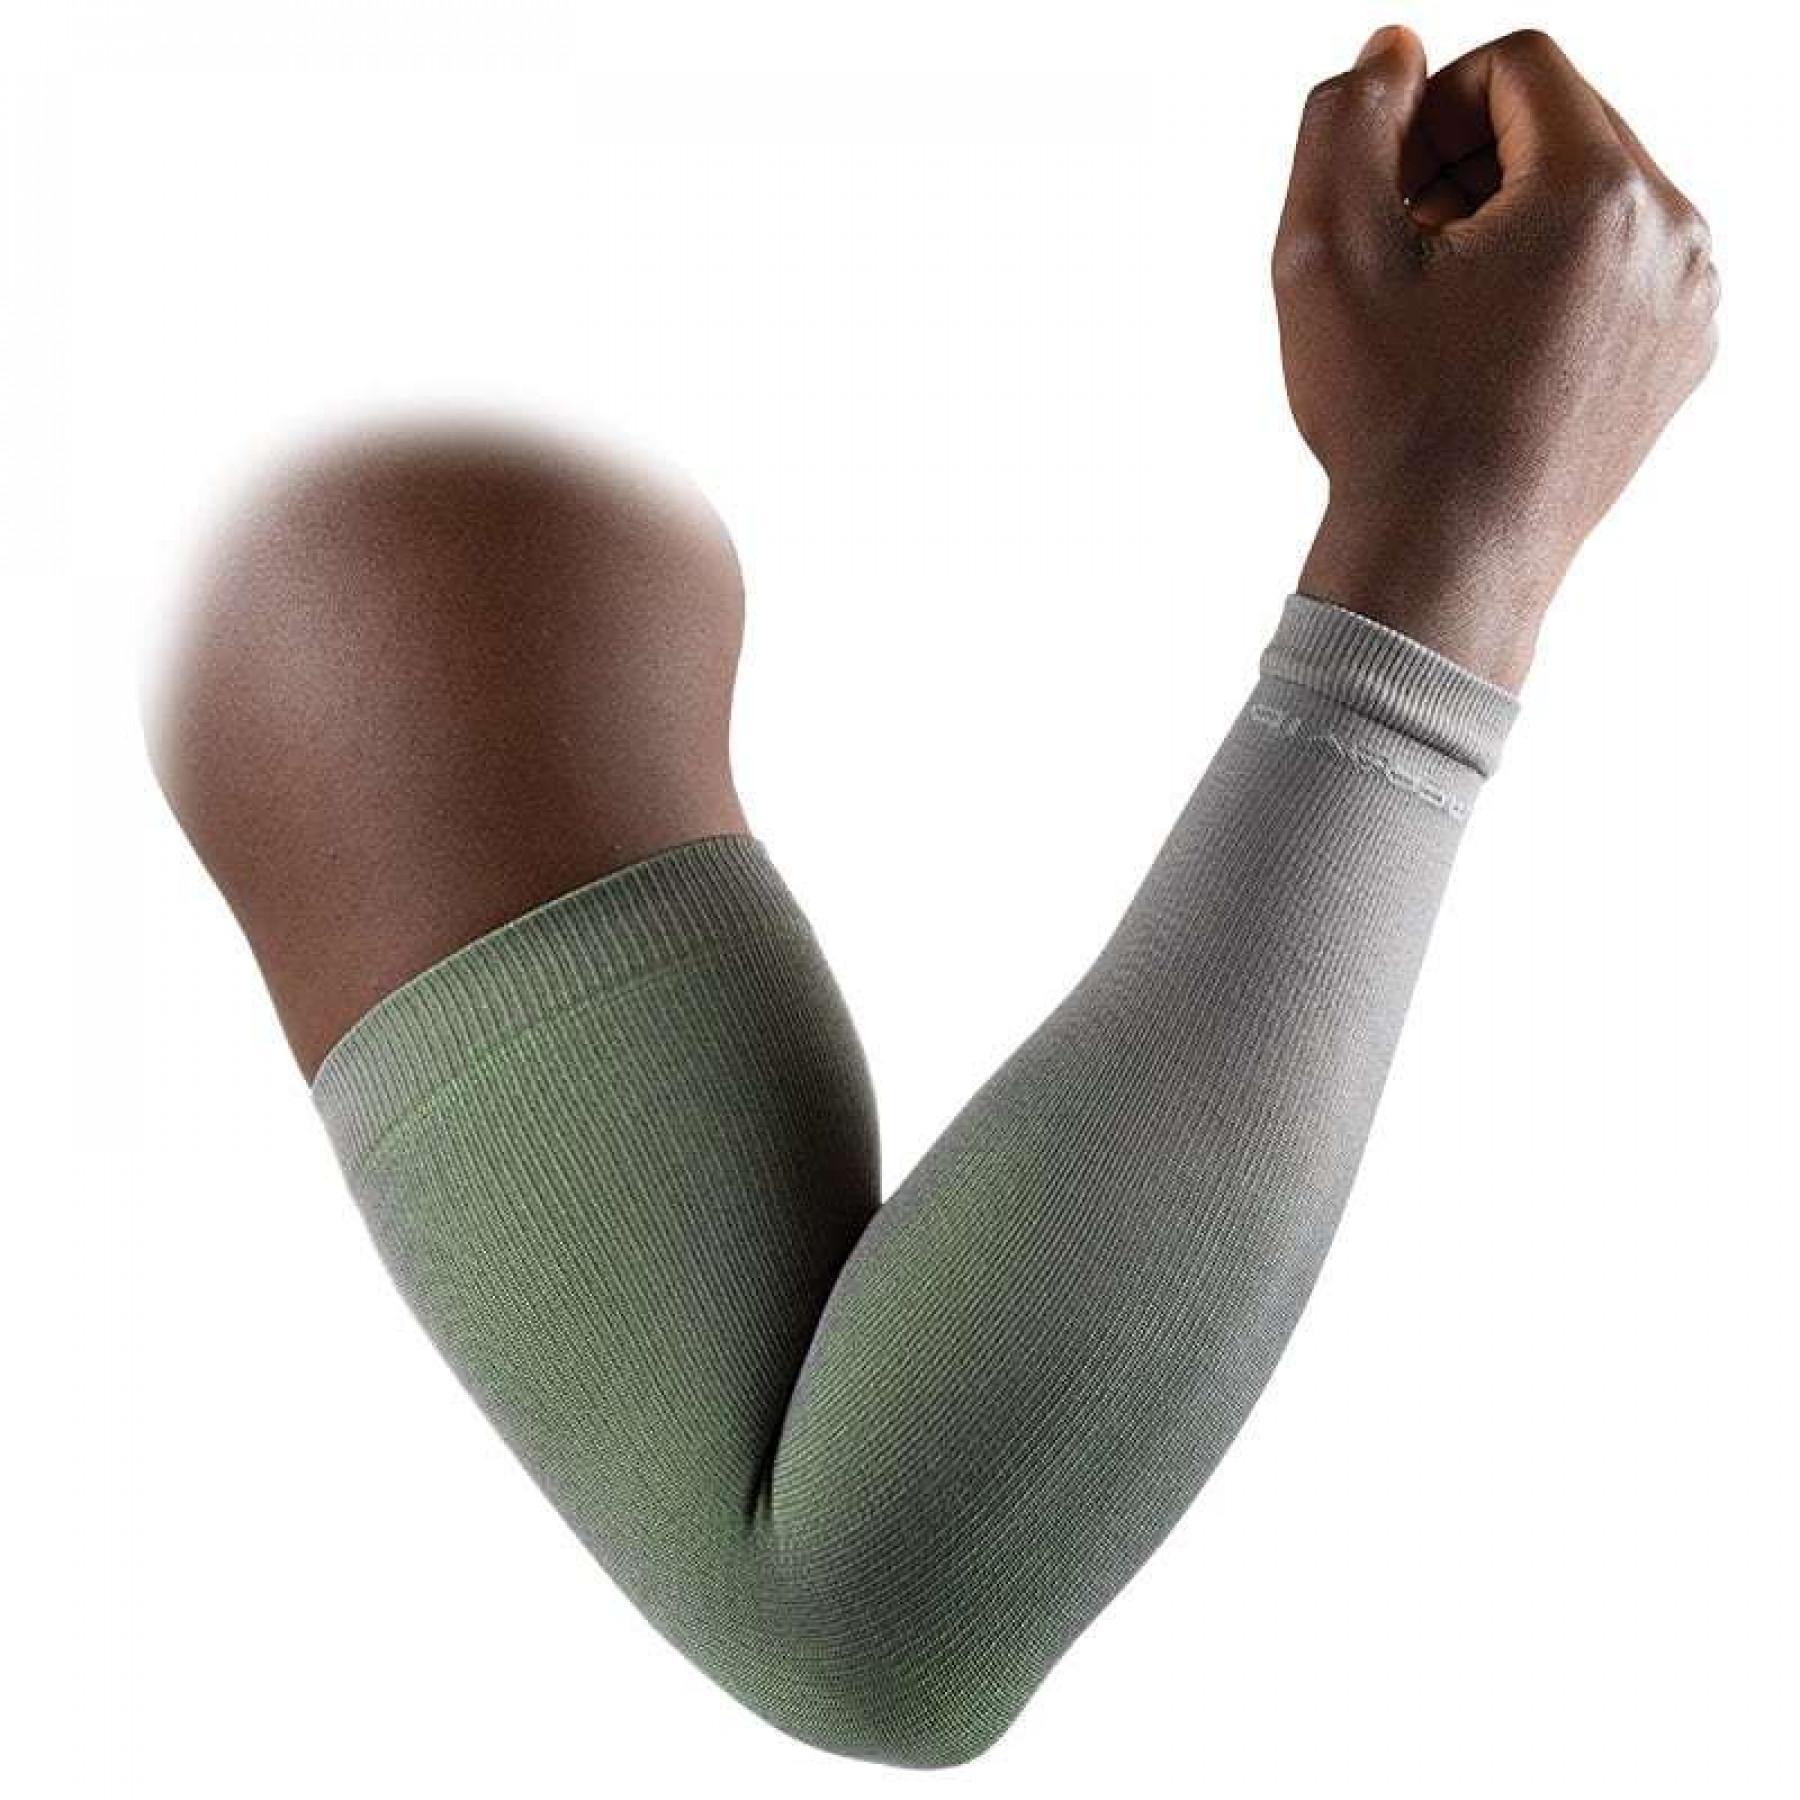 Manchon de compression bras McDavid bras ACTIVE